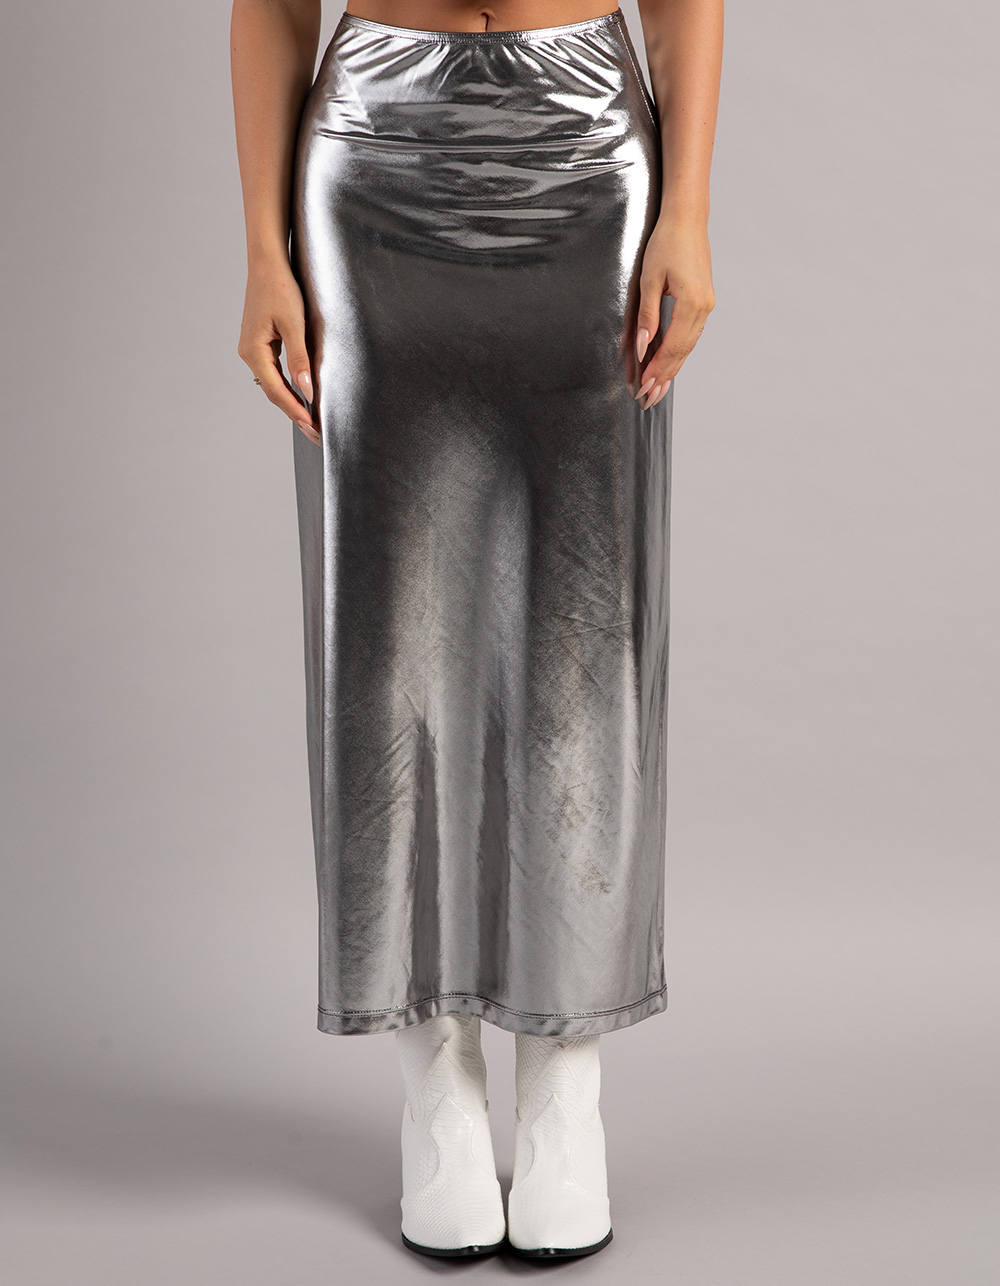 WEST OF MELROSE Metallic Womens Maxi Skirt - SILVER | Tillys